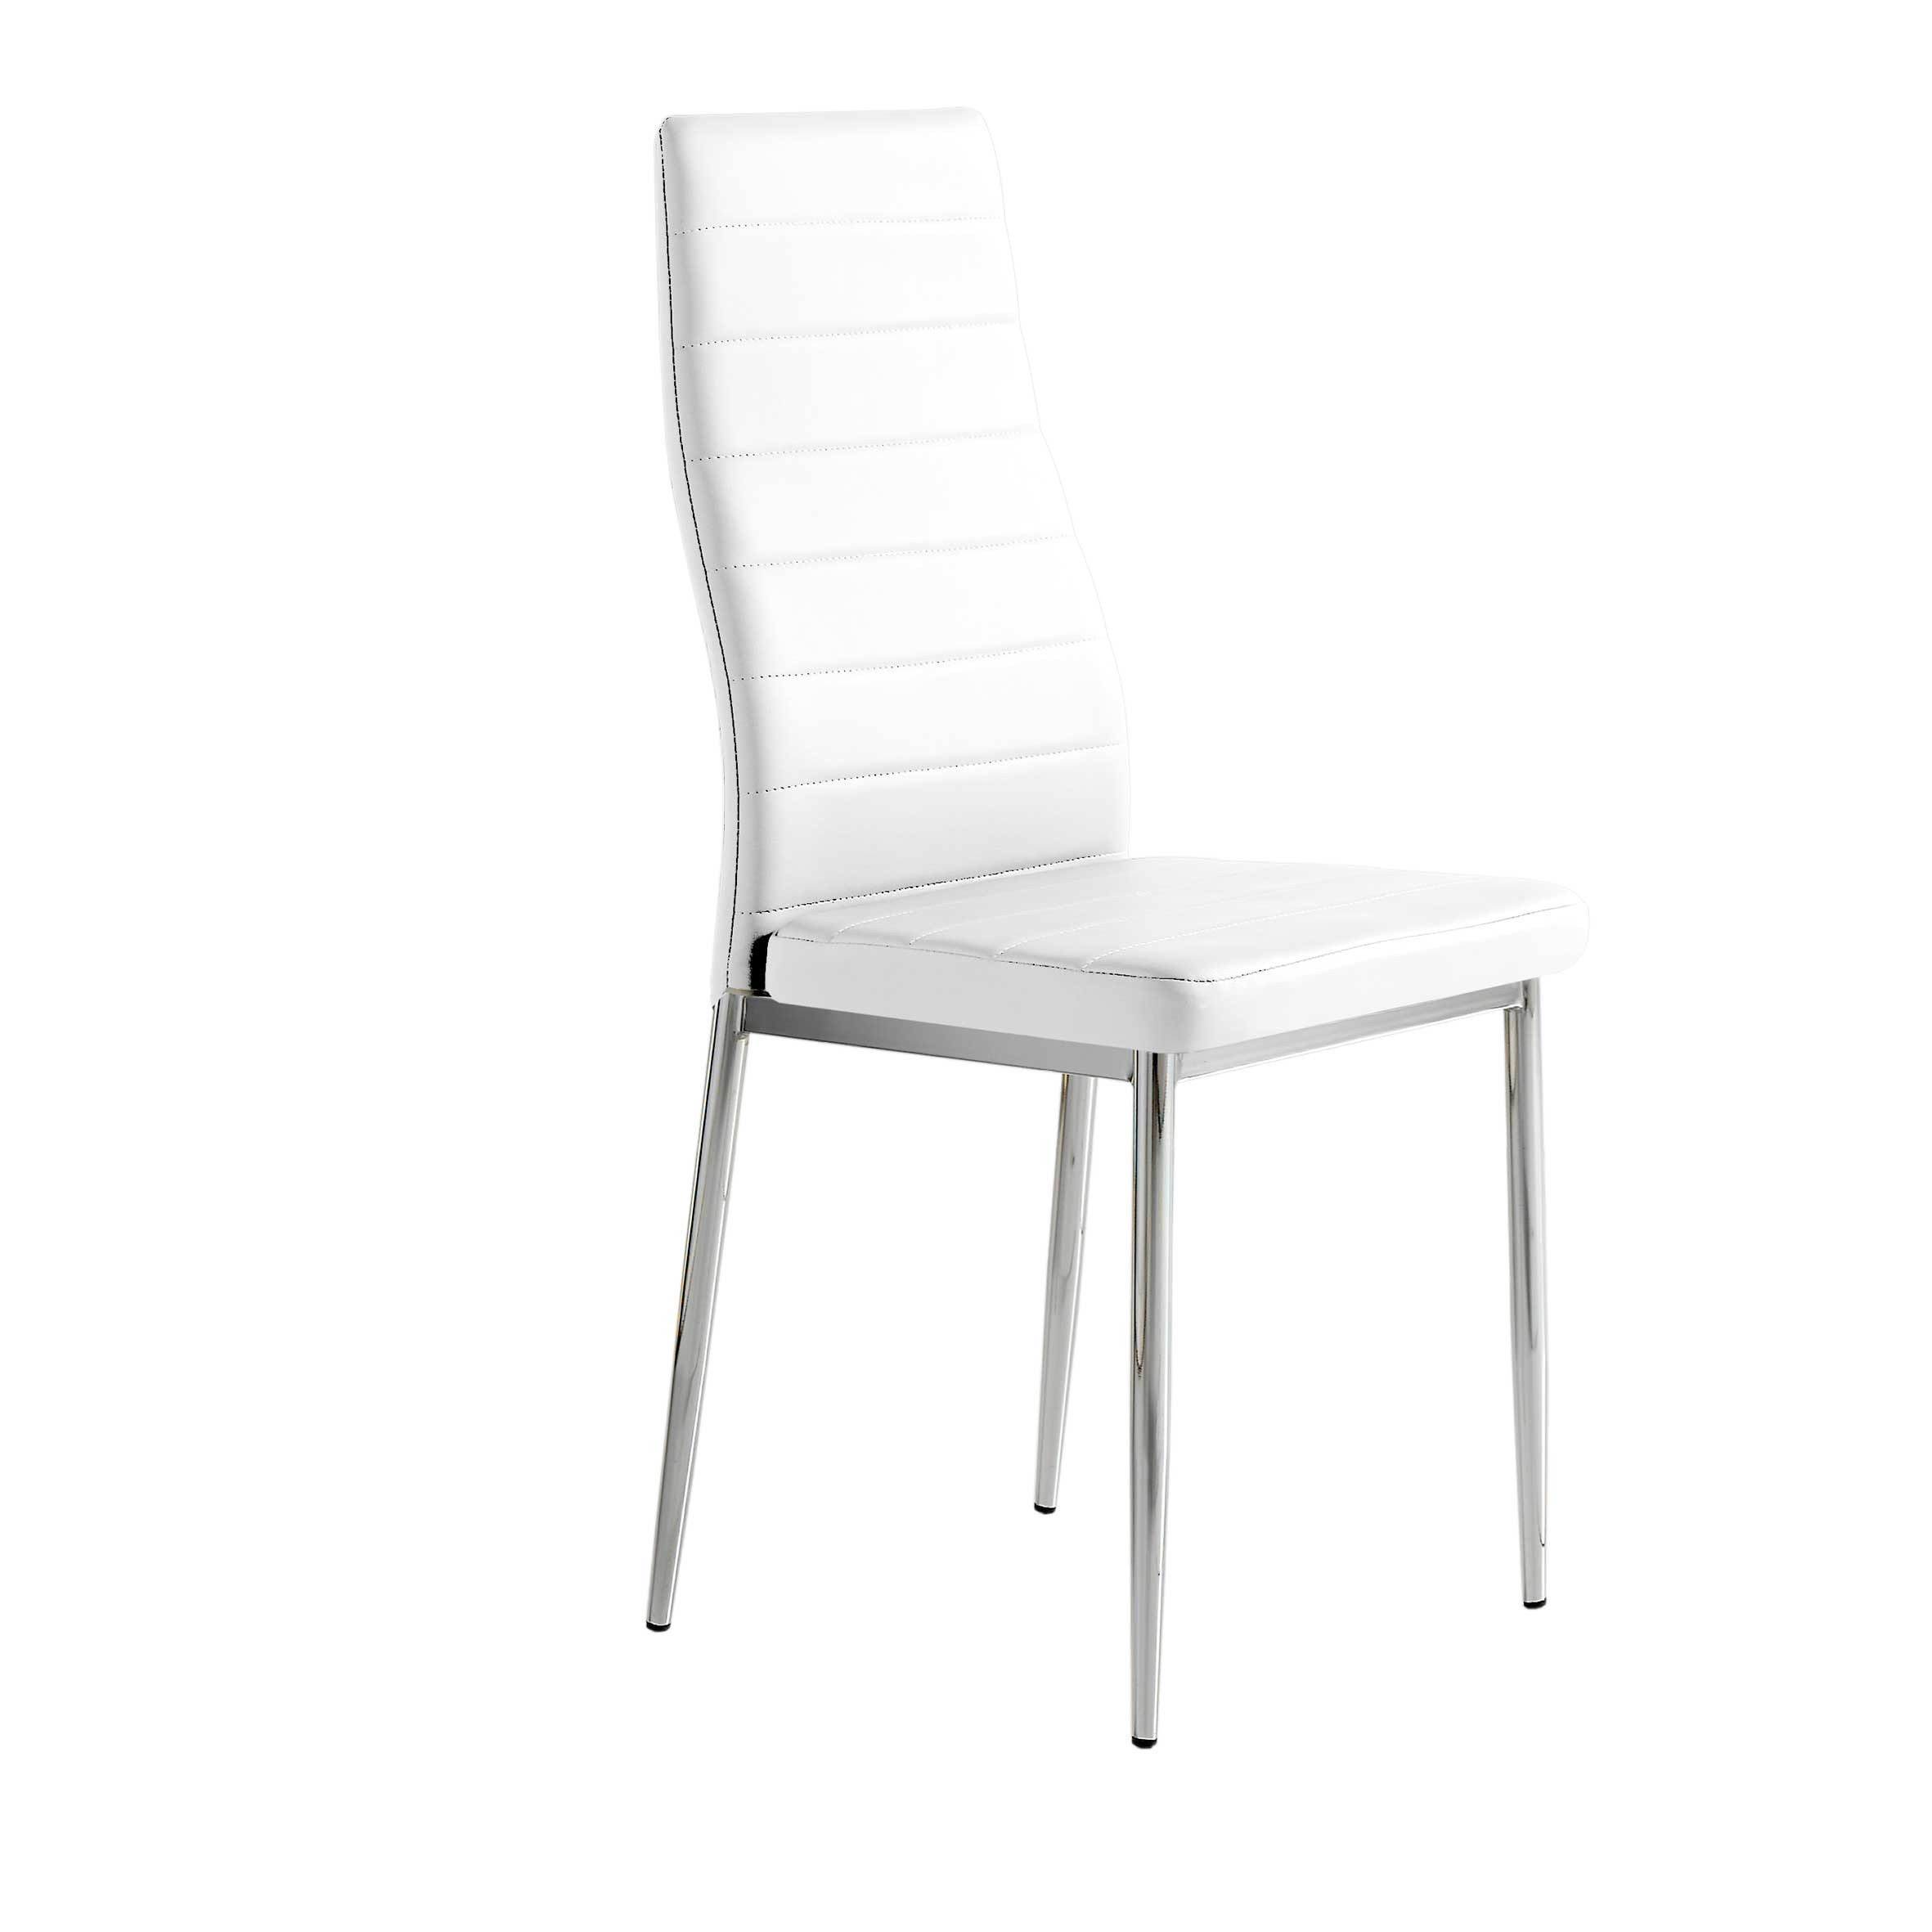 Pack 6 sillas polipiel color blanco